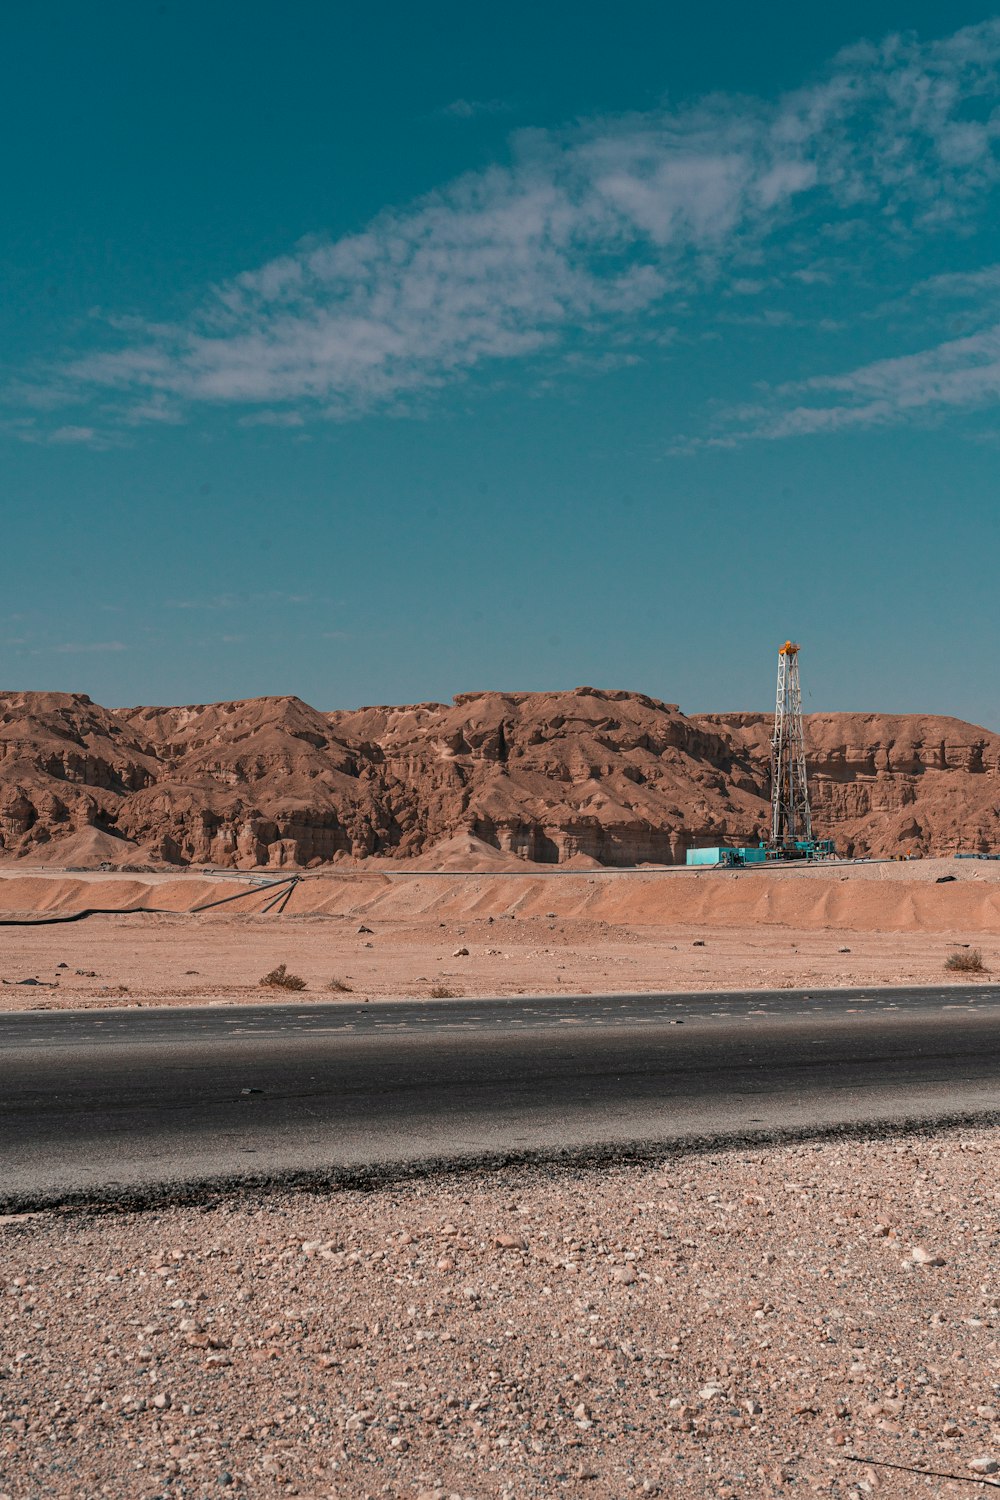 Un camion che percorre una strada nel mezzo di un deserto